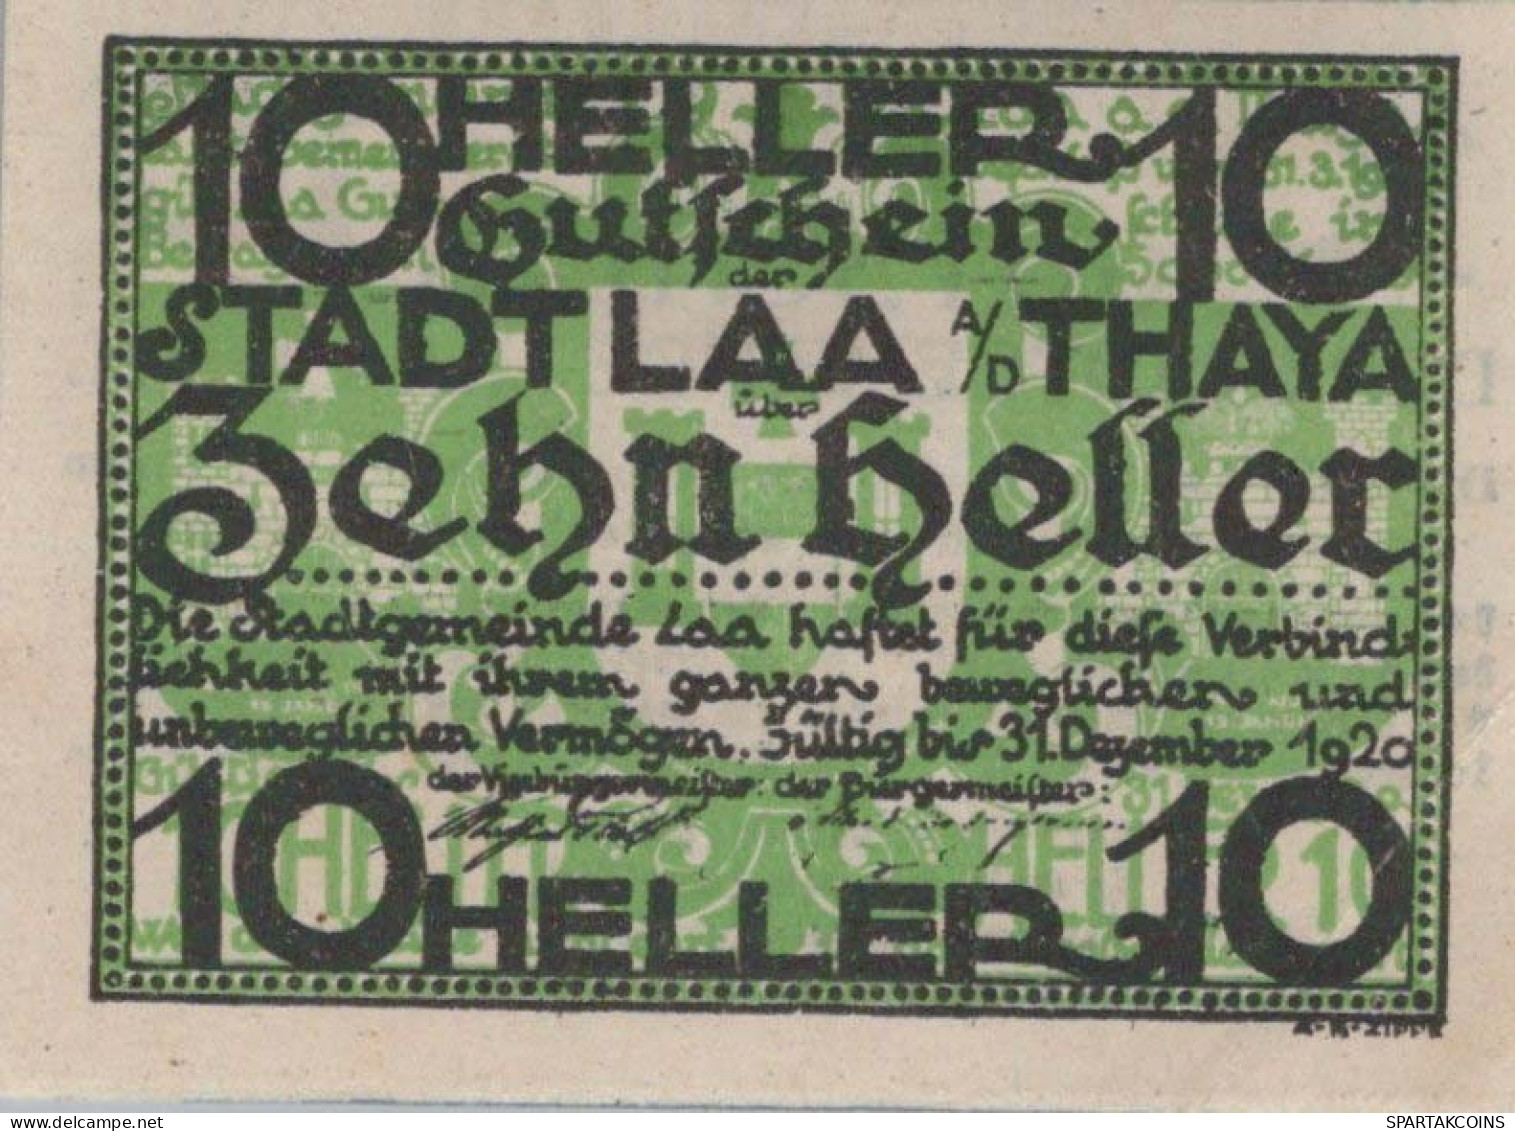 10 HELLER 1920 Stadt Laa An Der Thaya Österreich Notgeld Banknote #PD826 - [11] Local Banknote Issues